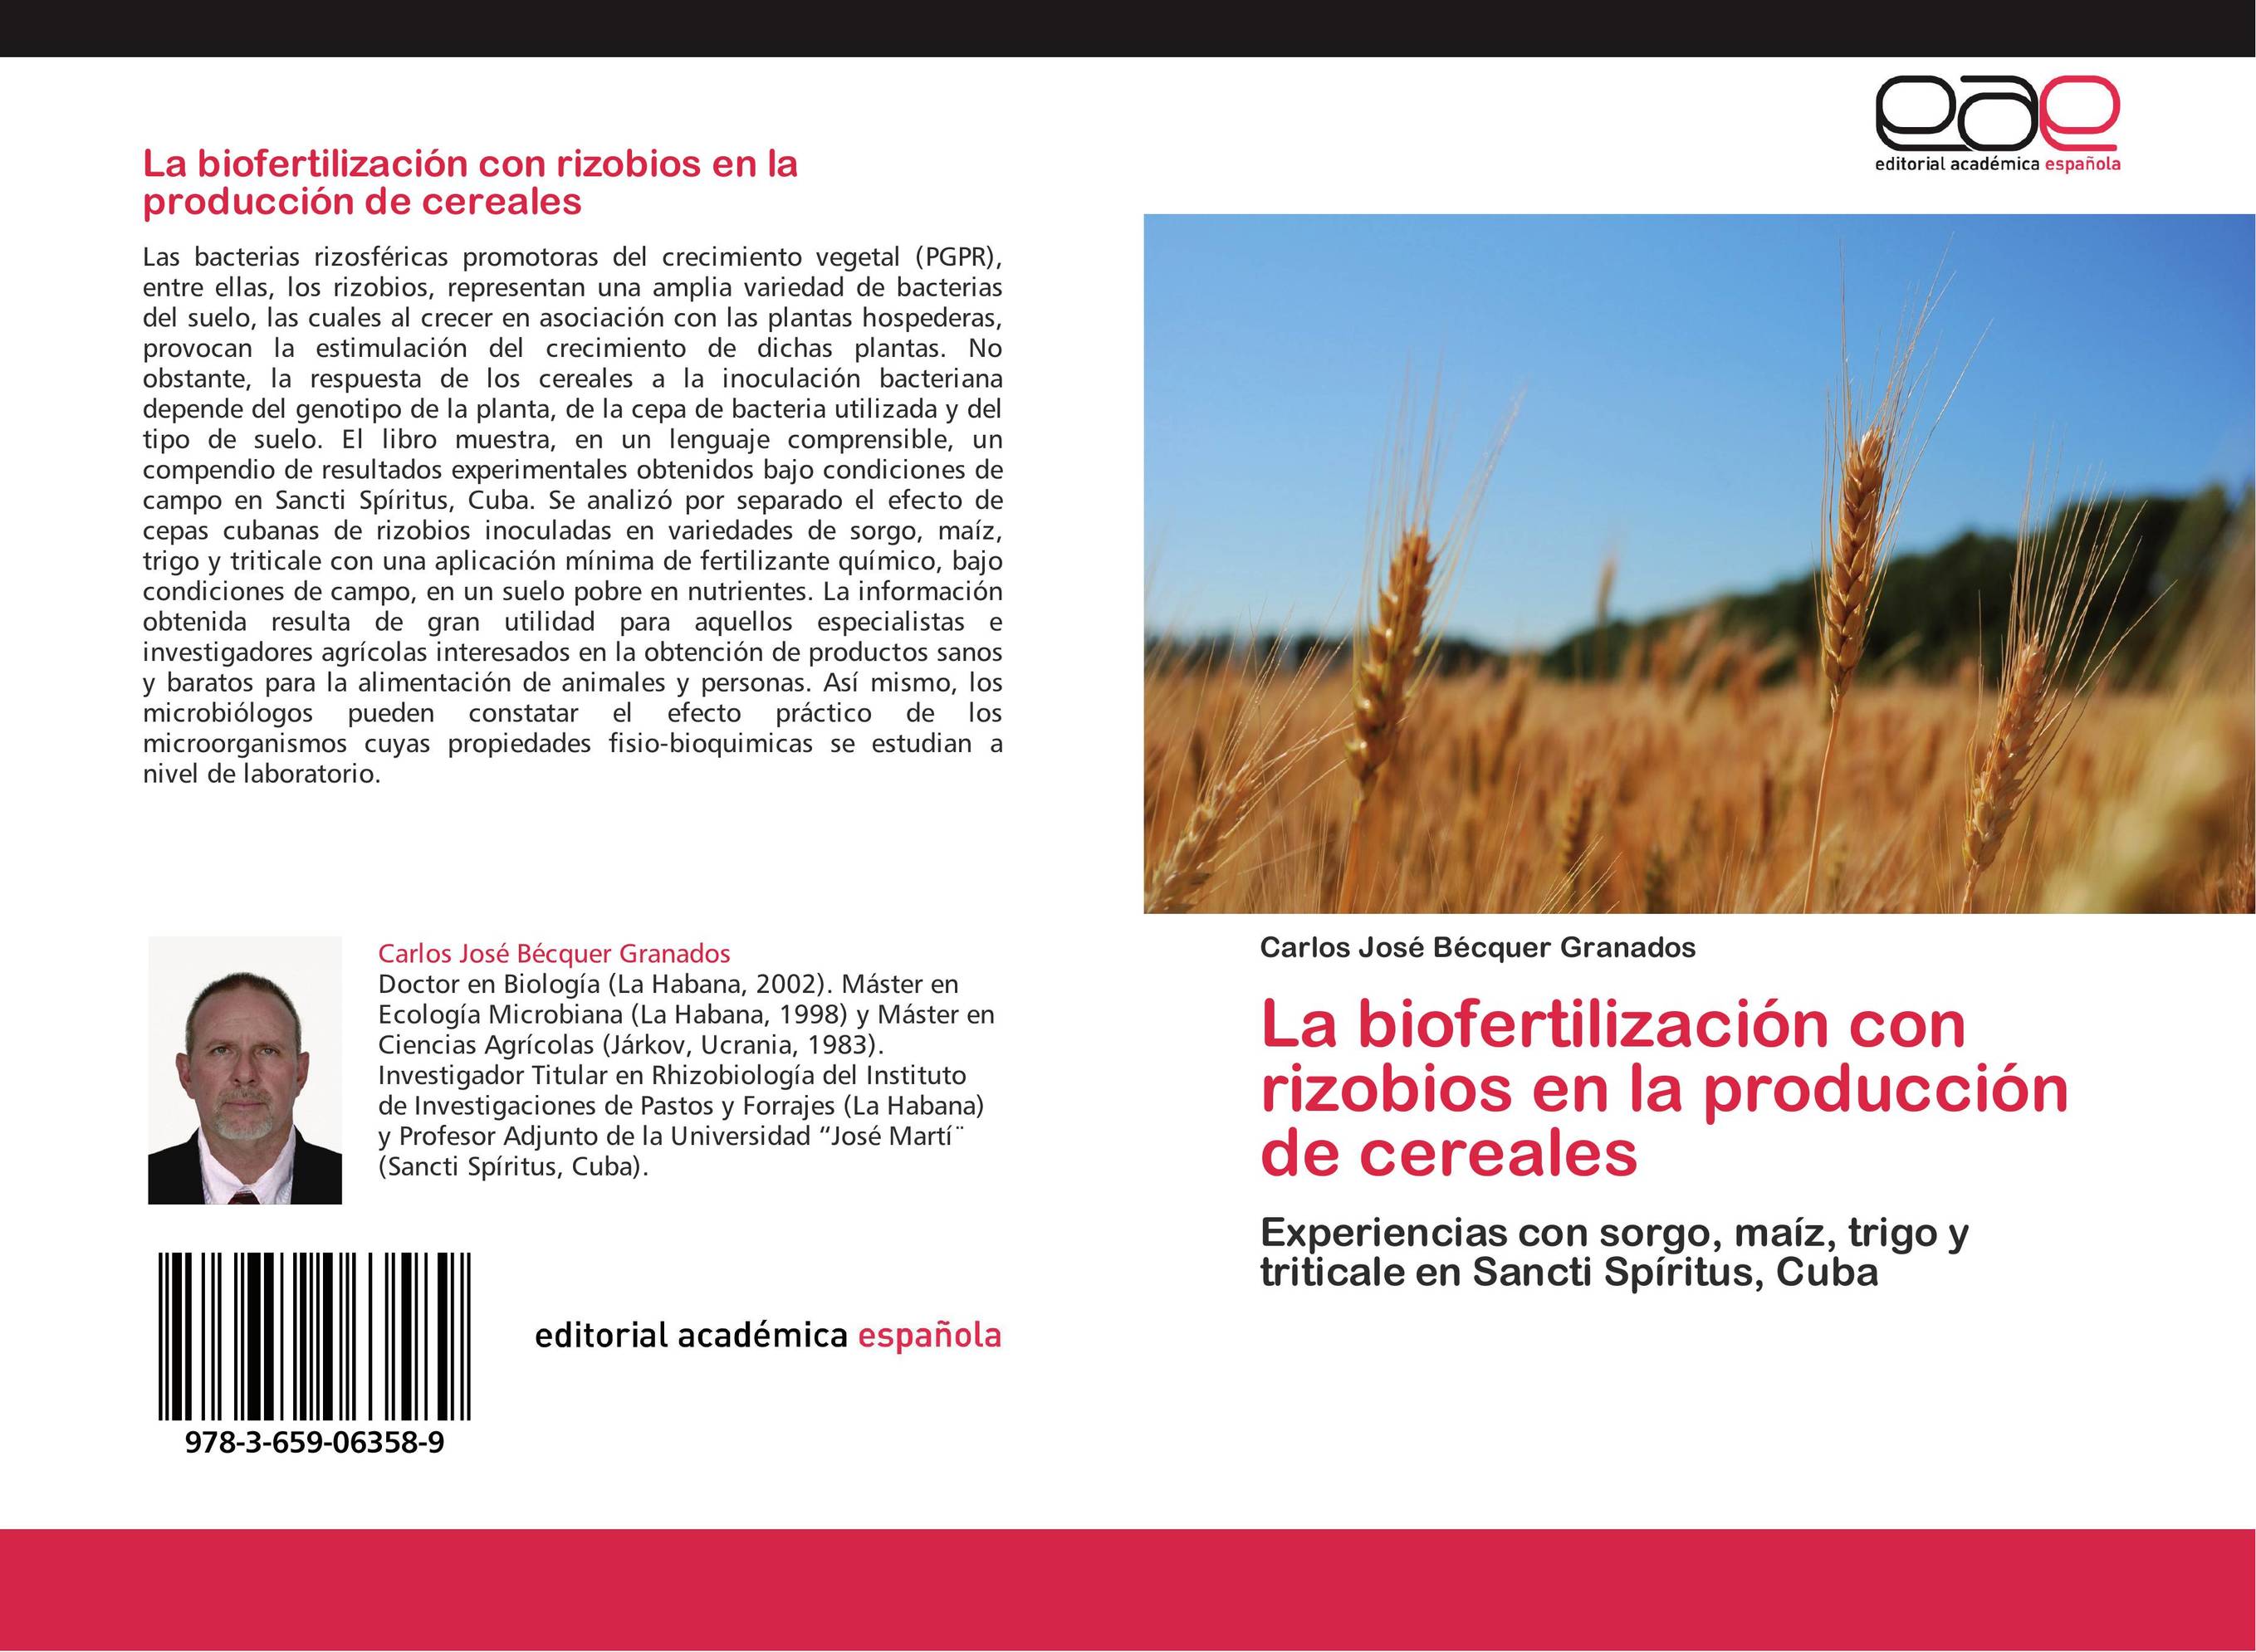 La  biofertilización con rizobios en la producción de cereales